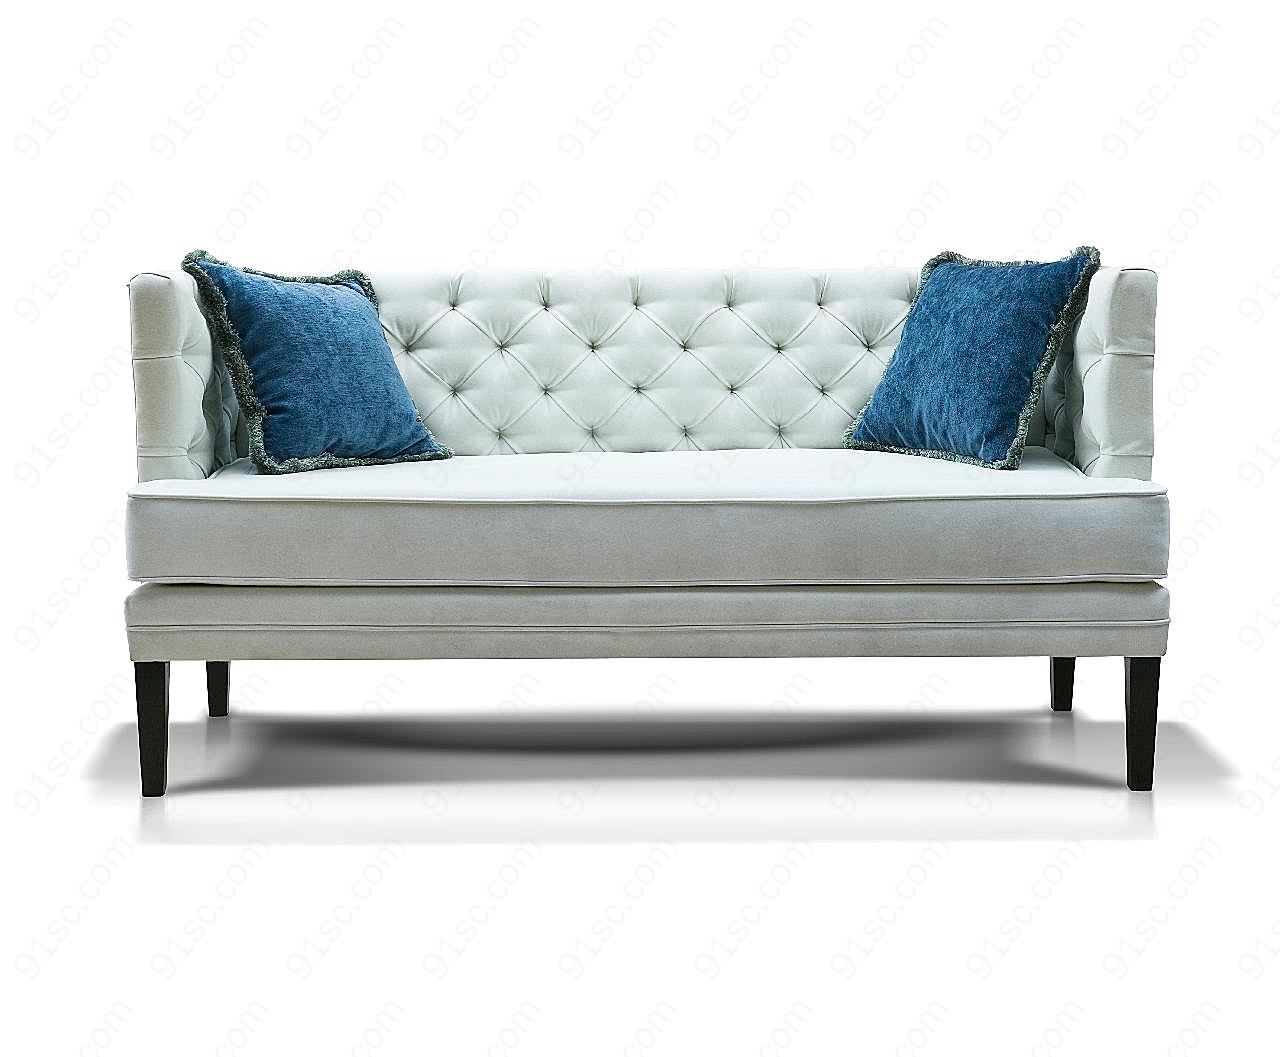 白沙发与蓝枕头图片高清装修